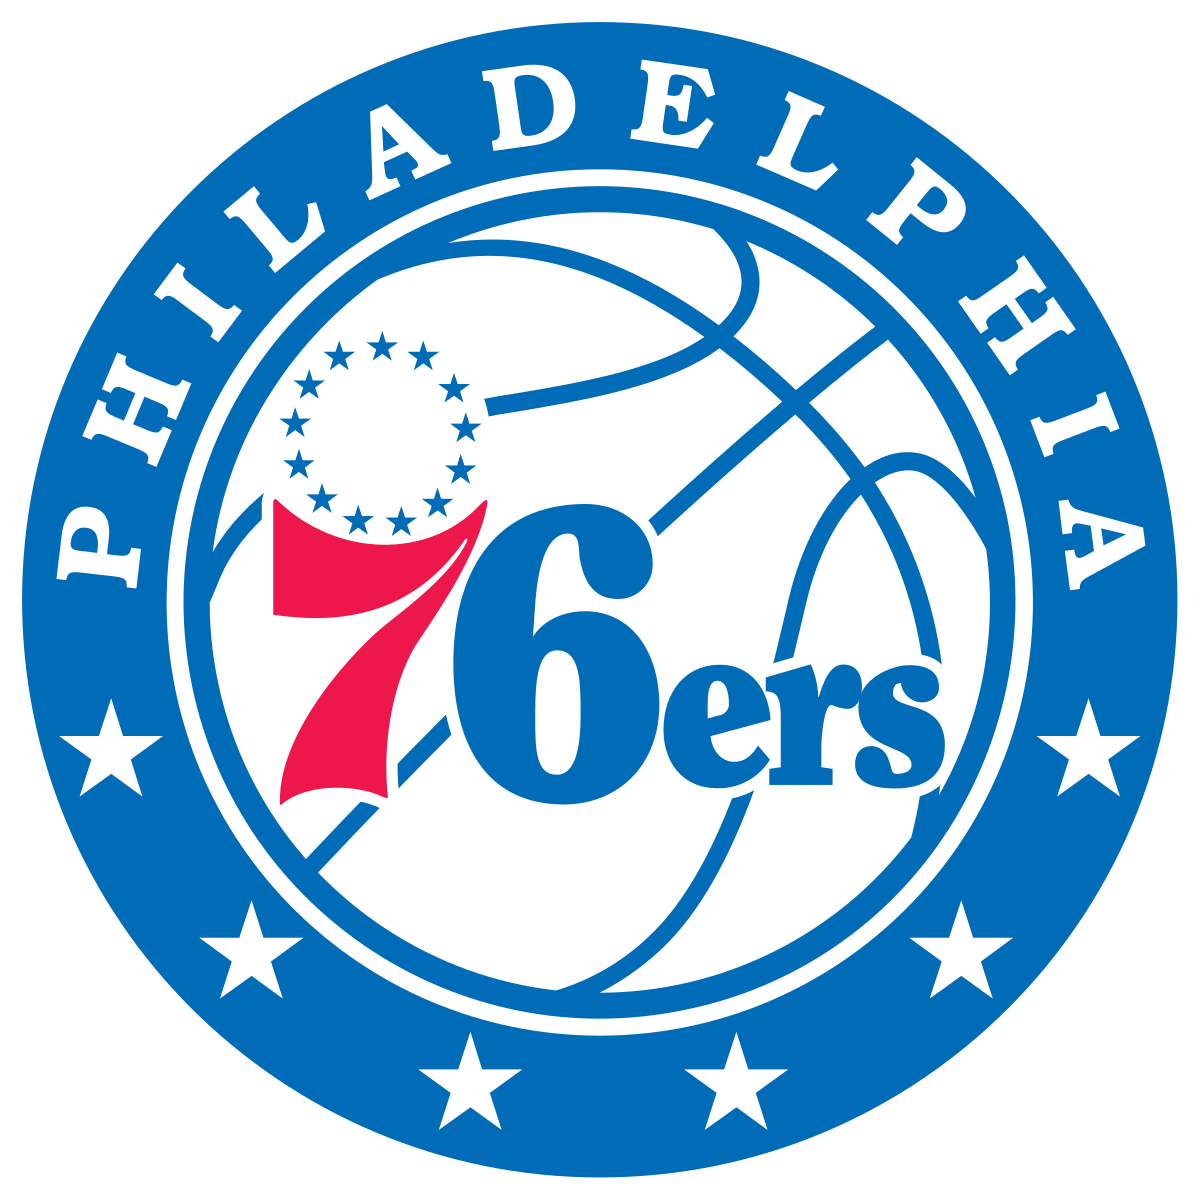 1200px-Philadelphia_76ers_logo.svg.png